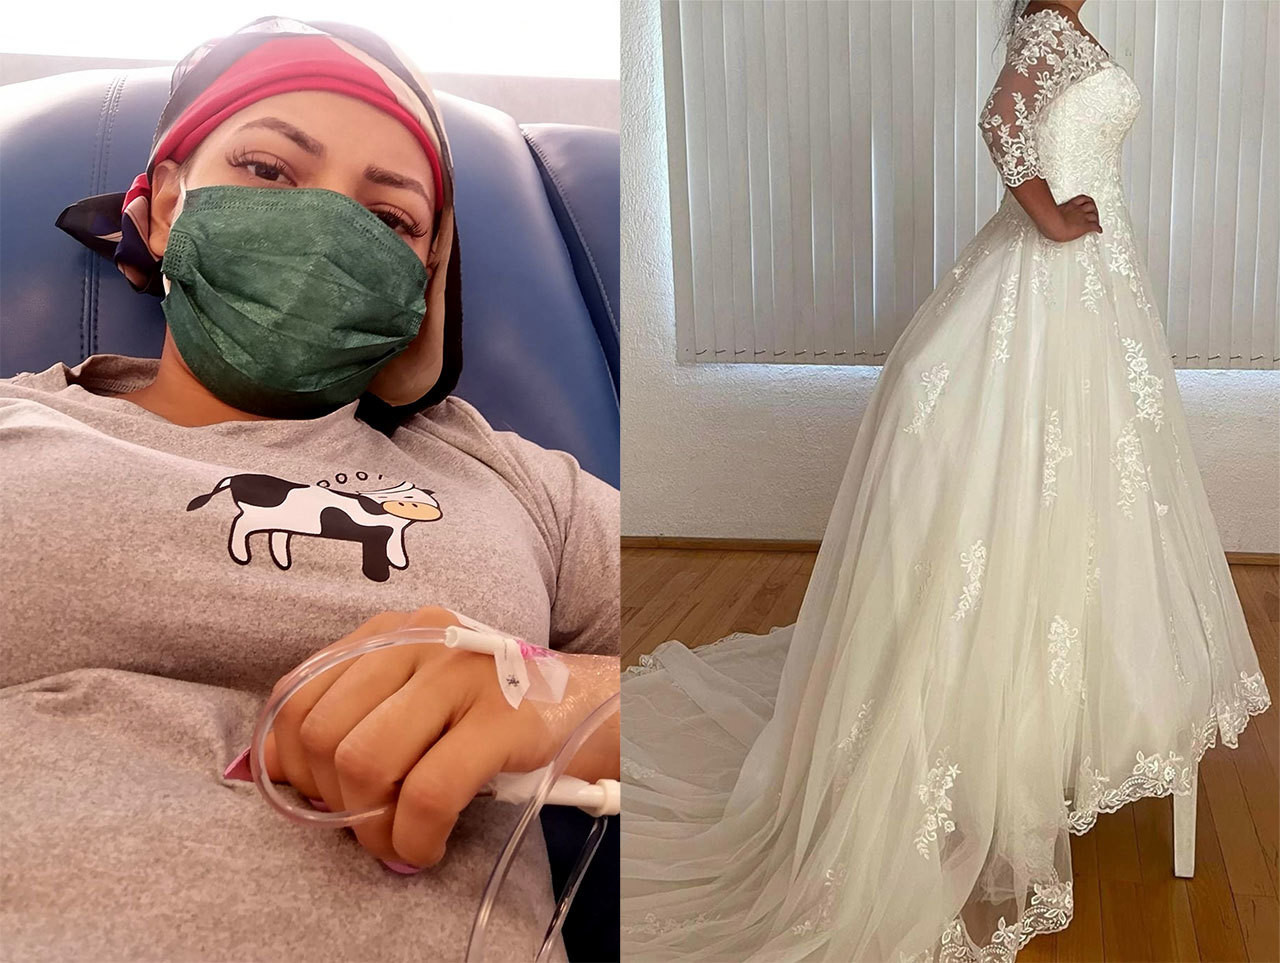 Mujer con cáncer rifa vestido de novia; pareja la abandonó